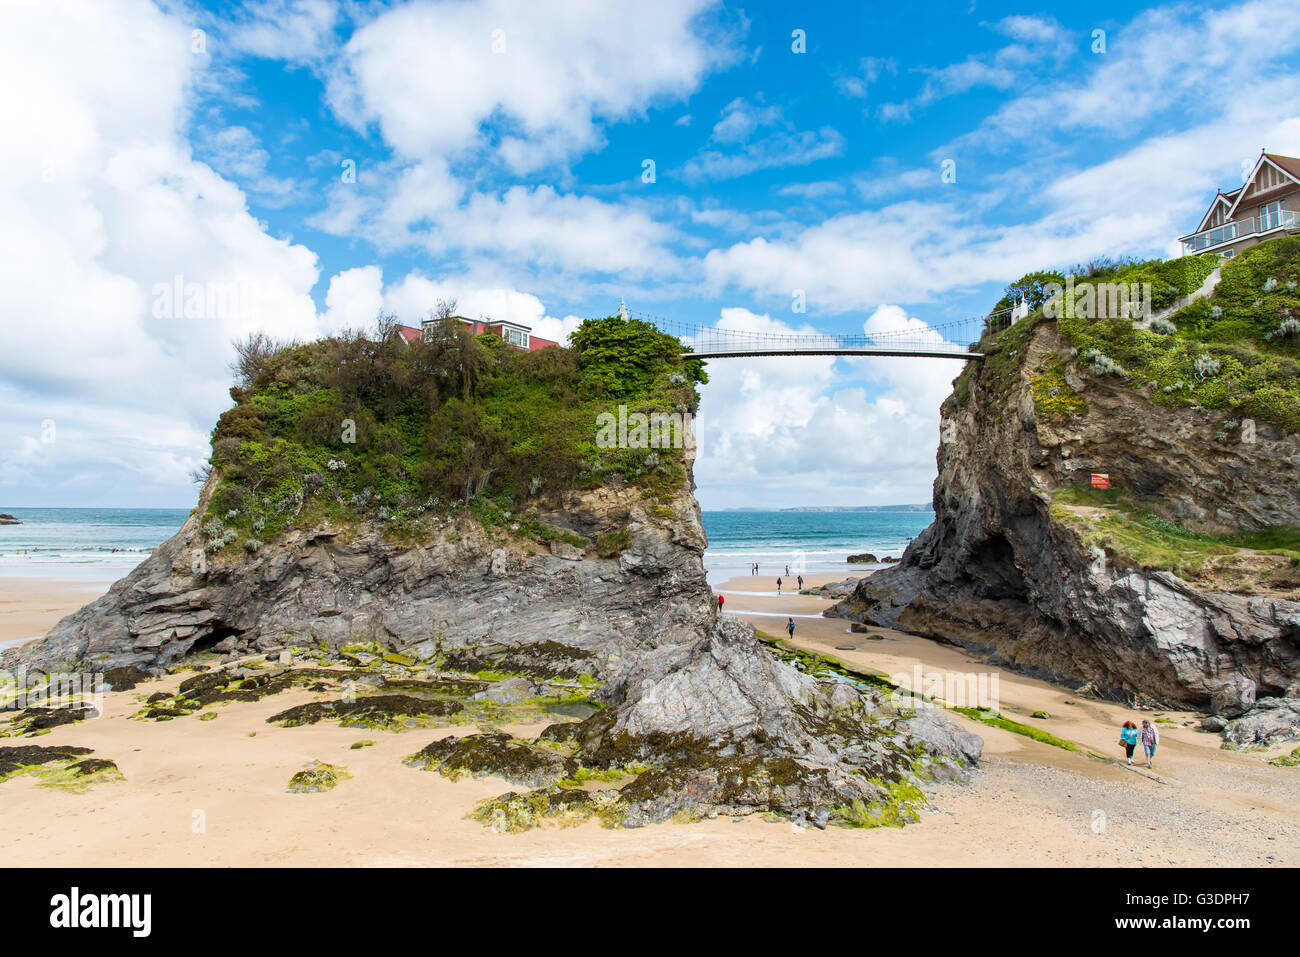 L'Île, reliée par un pont au continent, plage de Towan, Newquay, Cornwall, UK. Banque D'Images